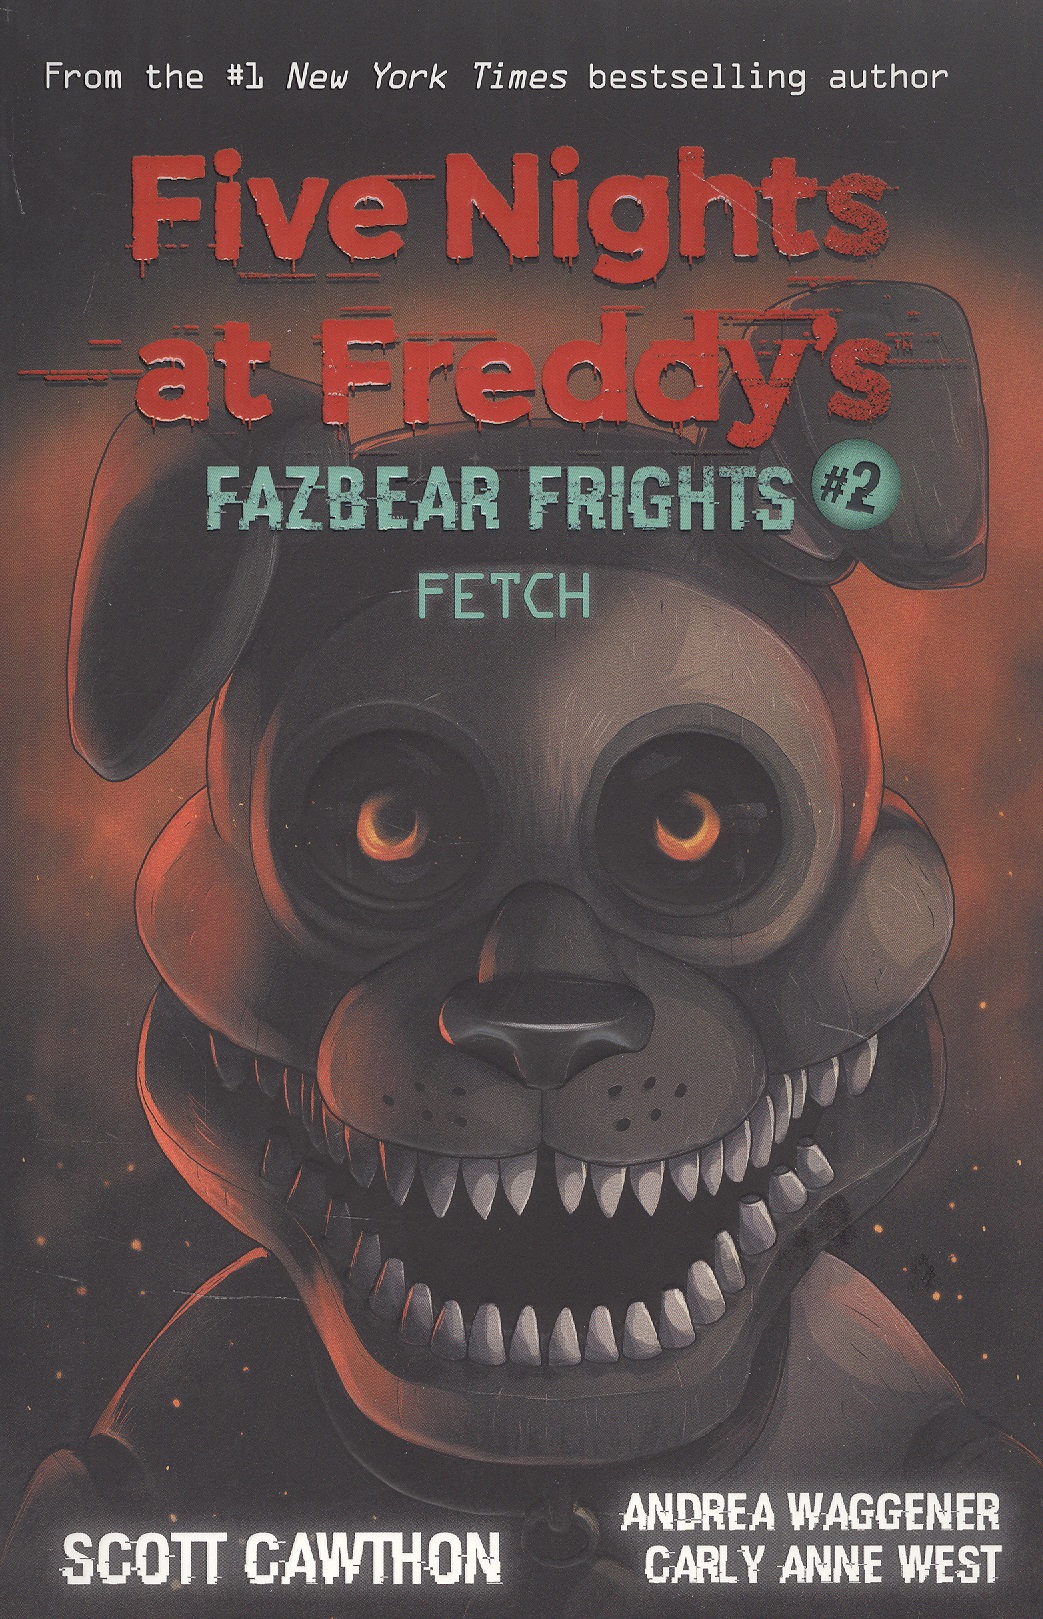 Five nights at freddys: Fazbear Frights #2. Fetch